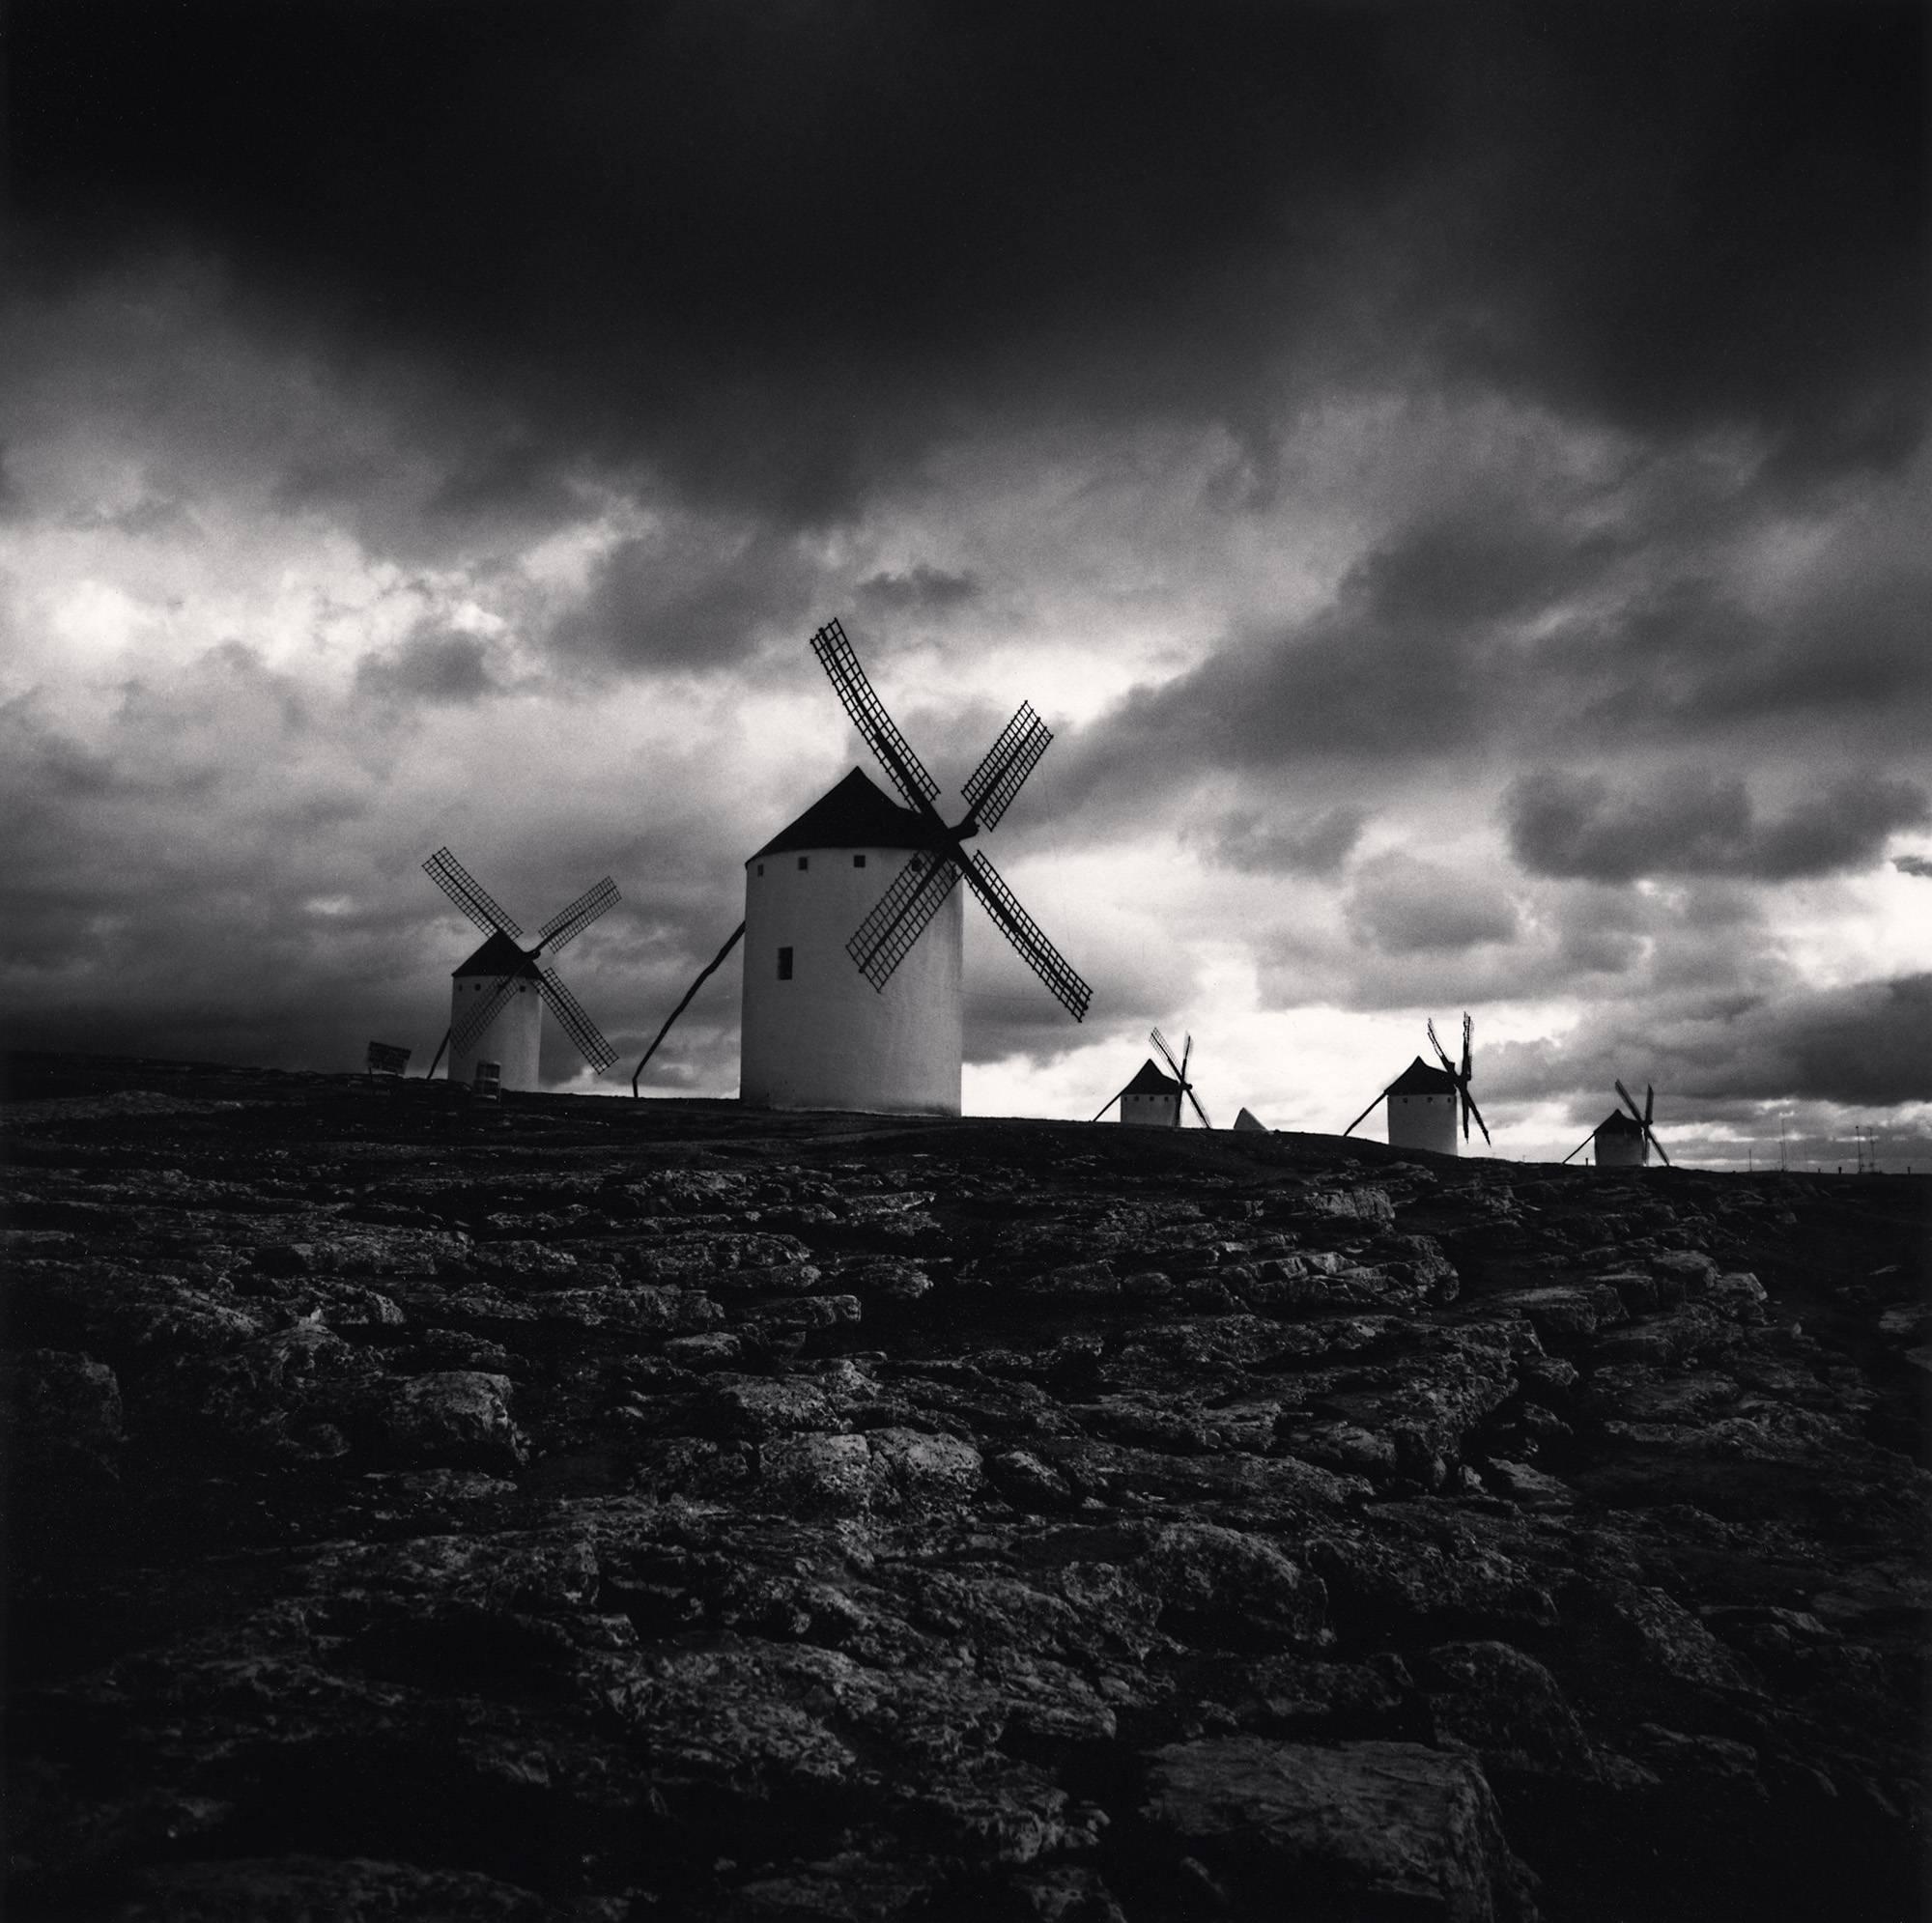 Michael Kenna Landscape Photograph - Quixote's Giants, Study 3, Campo de Criptana, La Mancha, Spain, LTD photograph